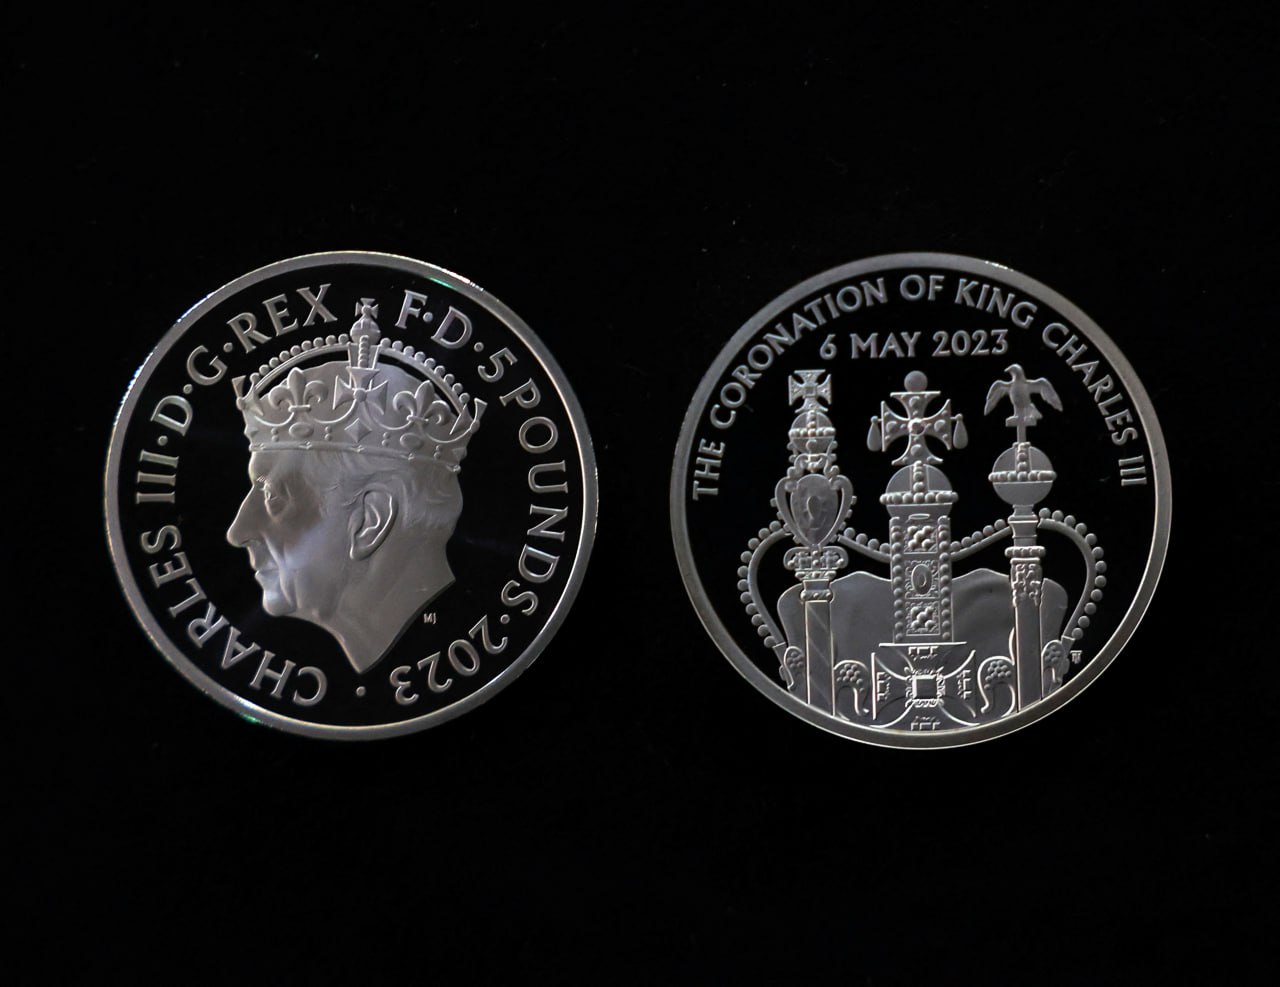 монети на честь сходження короля на трон номіналом 50 пенсів та 50 фунтів. Фото: REUTERS/Molly Darlington